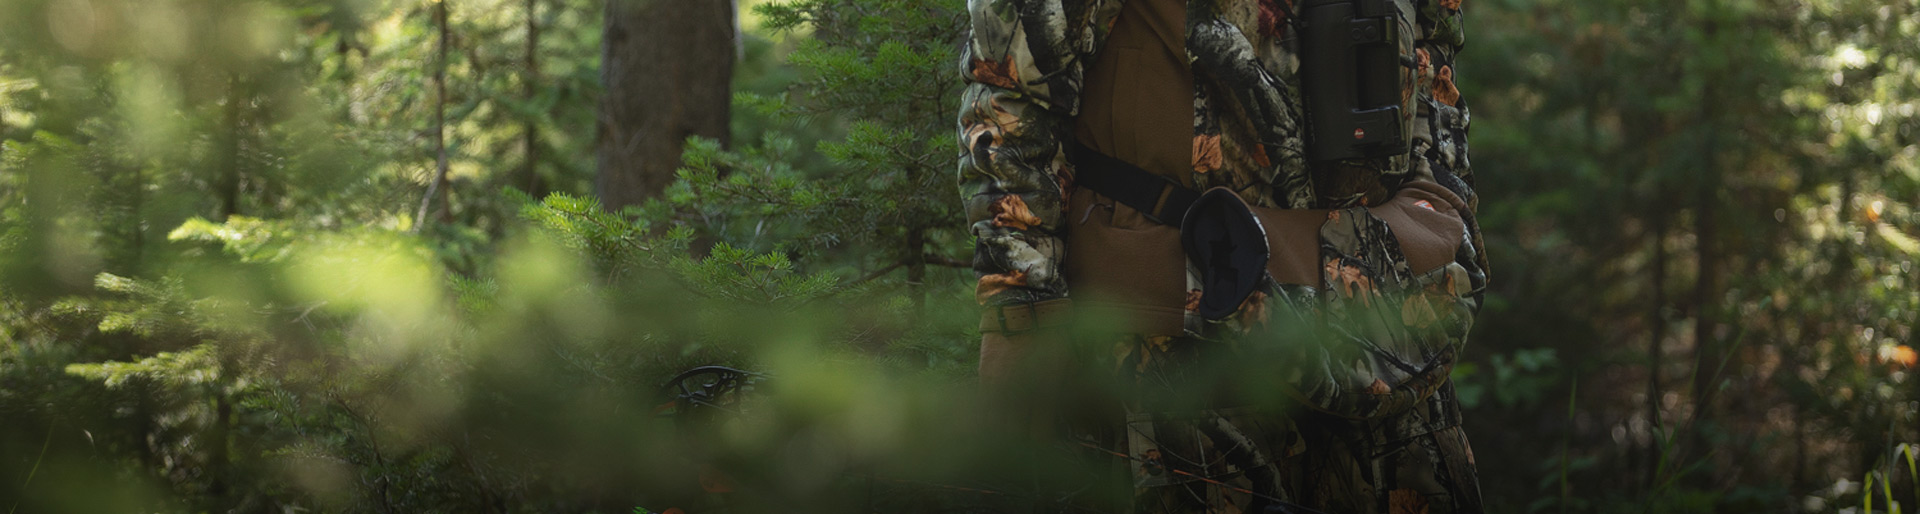 A man in the woods wearing HuntGuard gear.